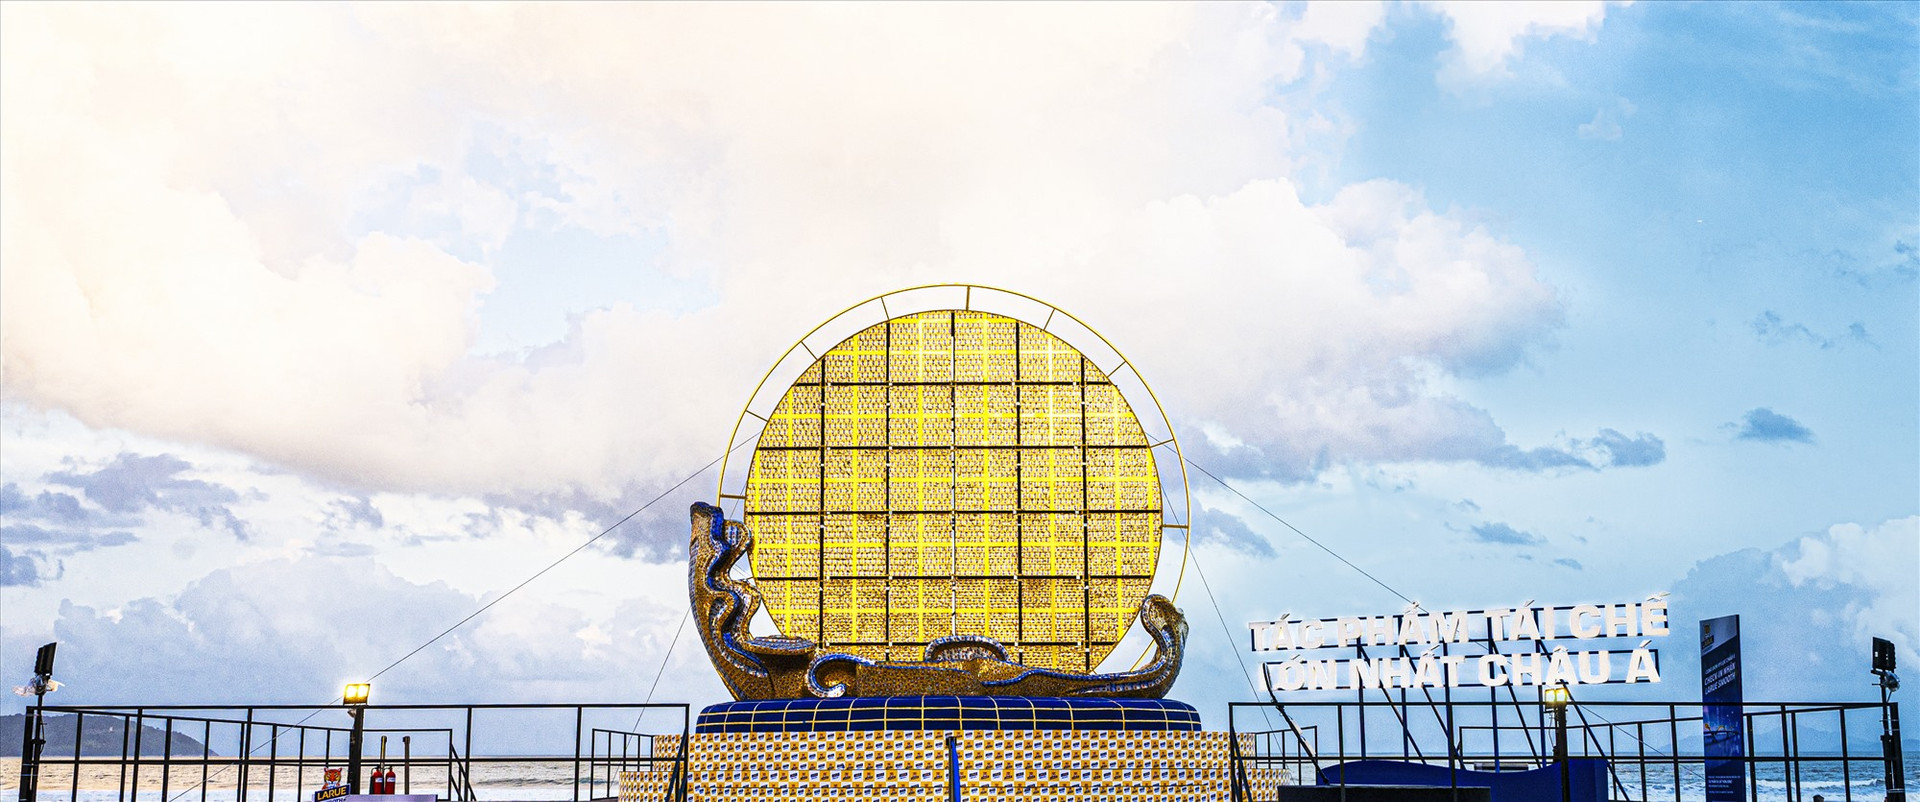 Tác phẩm nghệ thuật tái chế lớn nhất Châu Á mang tên “Hừng đông”. Ảnh: Đ.Y